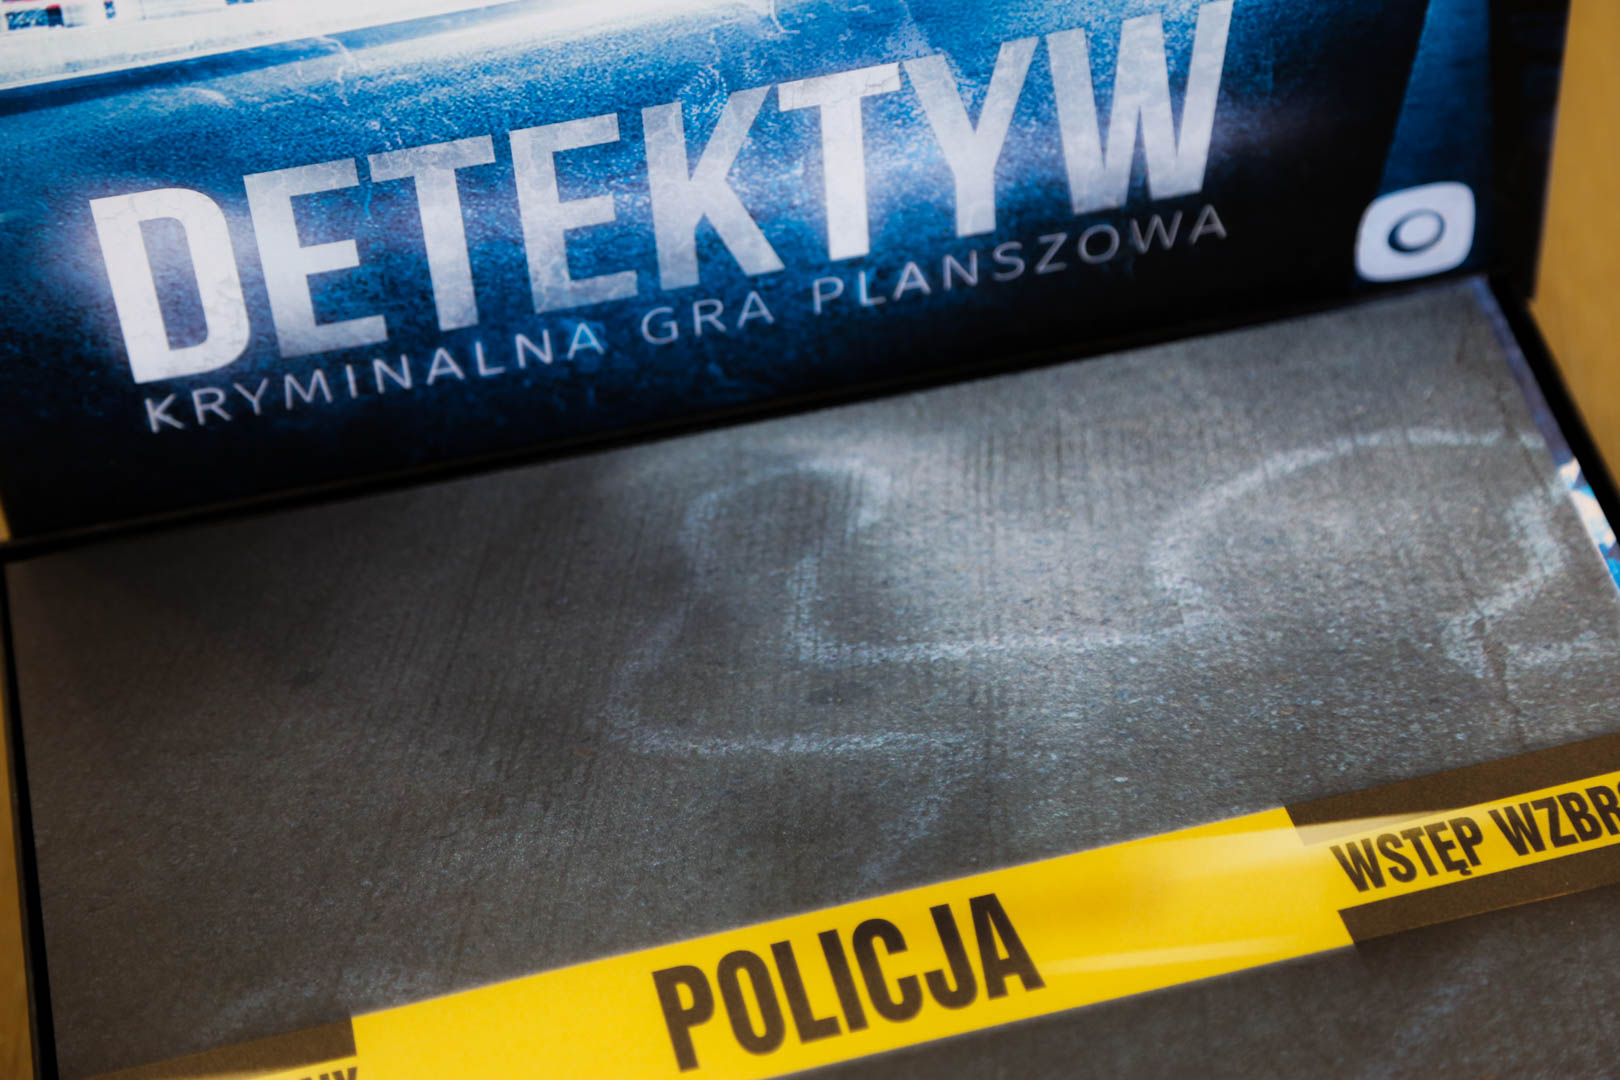 Detektyw Kryminalna Gra Planszowa 2